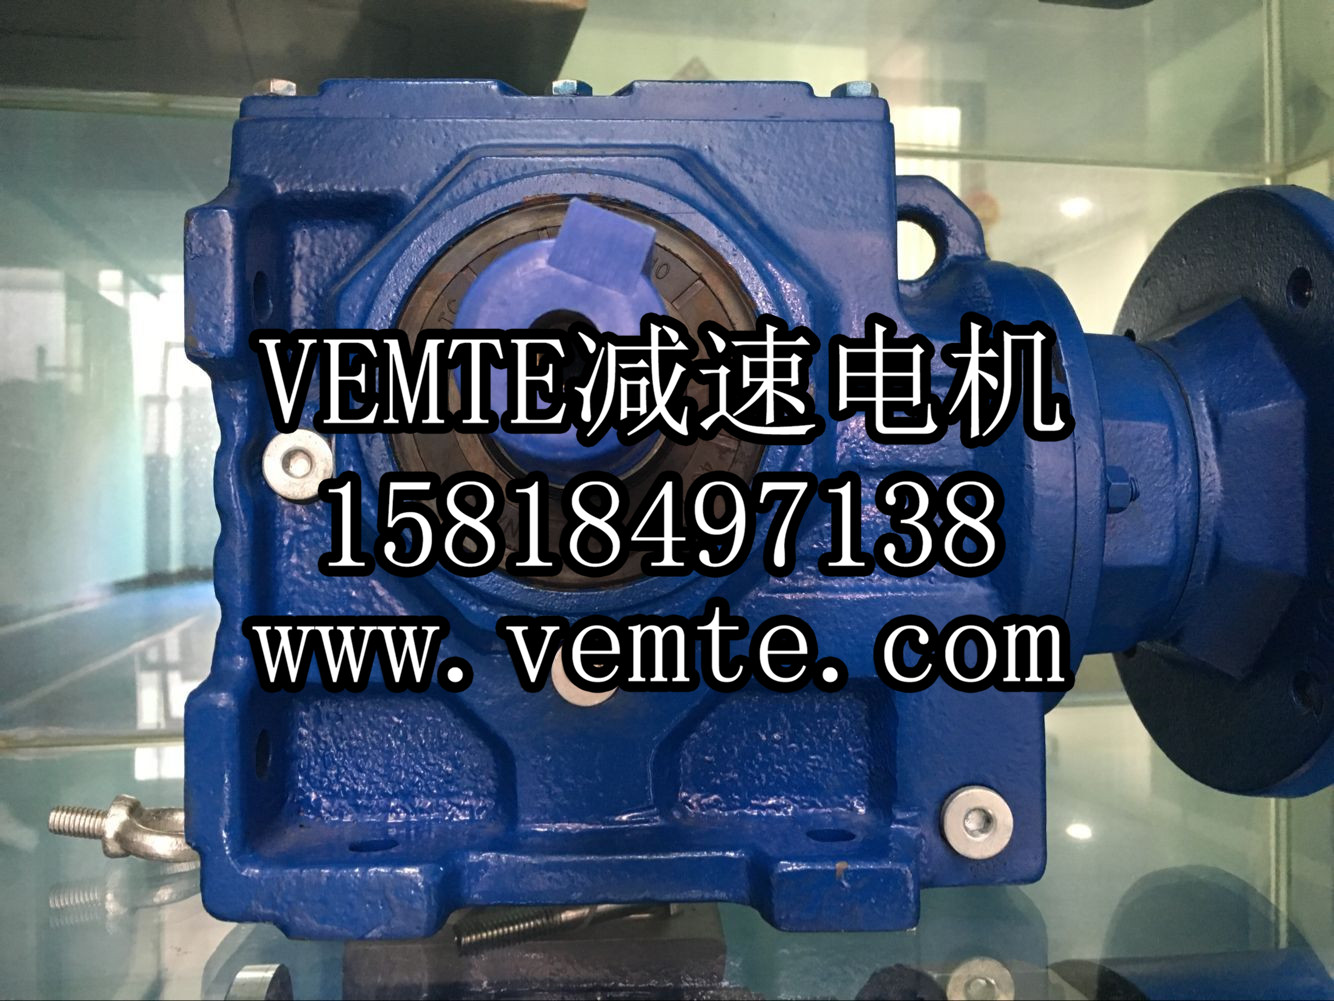 VEMT太阳集团7237网站
太阳
出产厂家 (12)